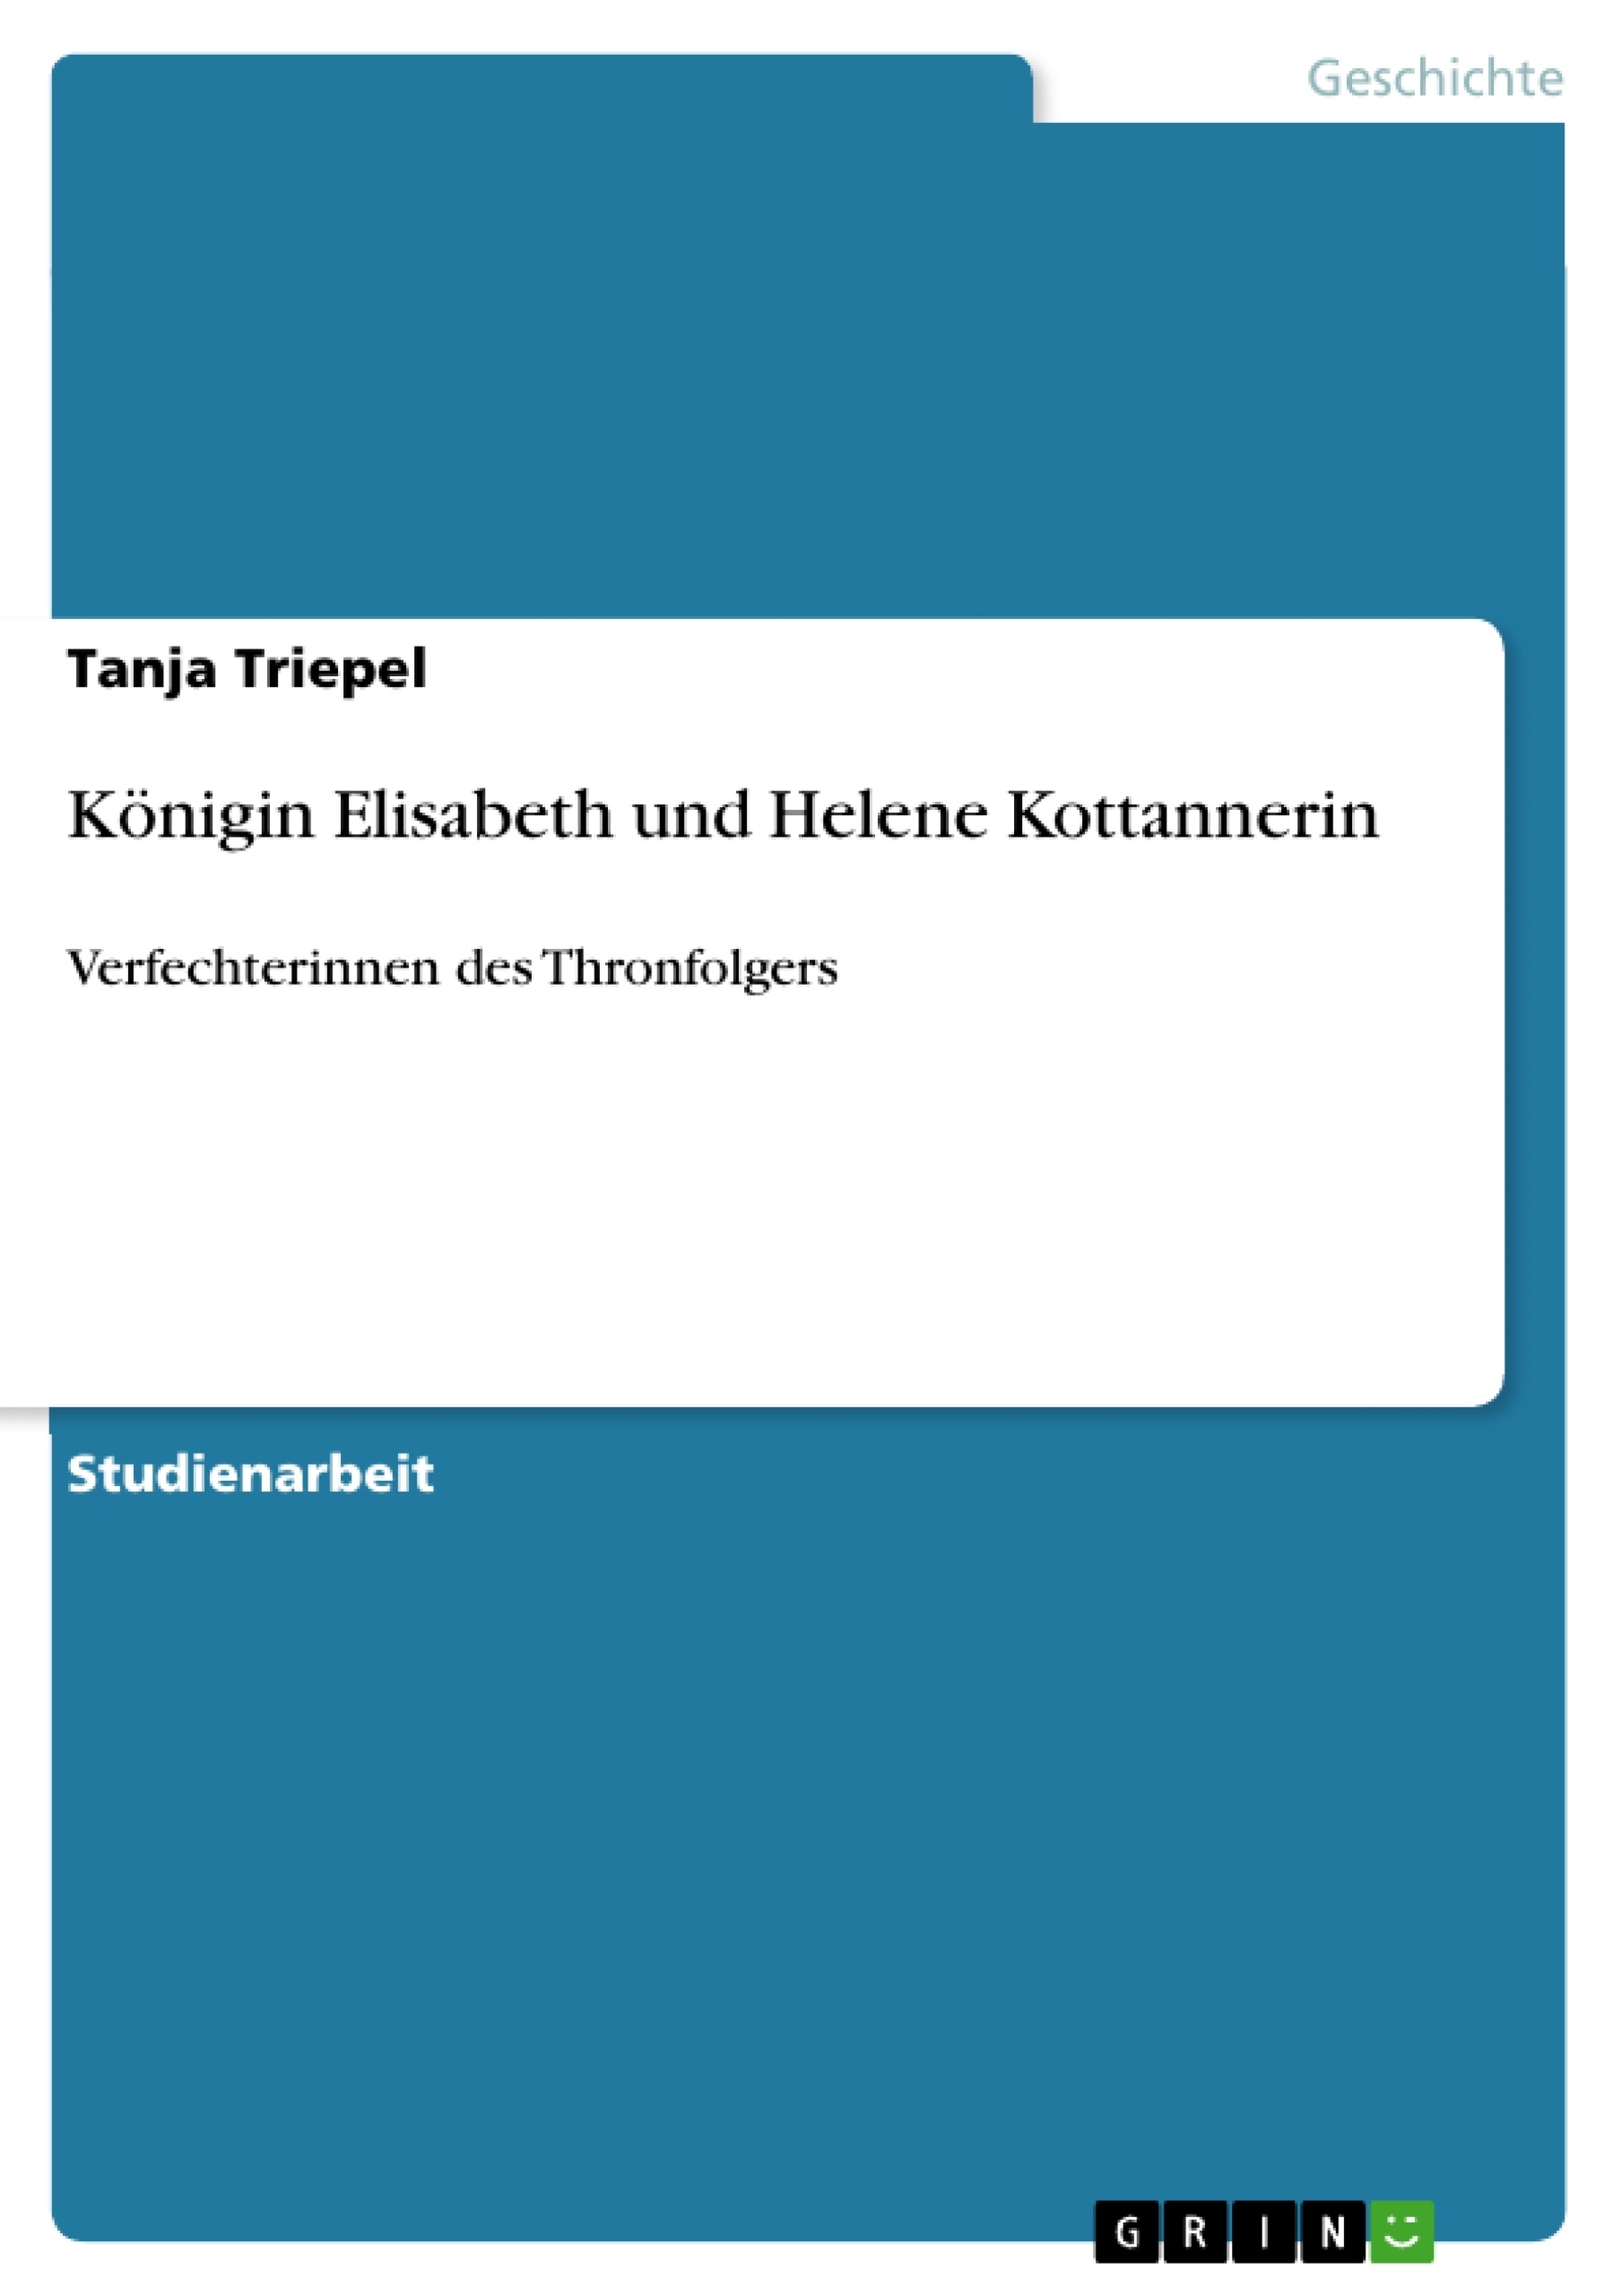 Título: Königin Elisabeth und Helene Kottannerin